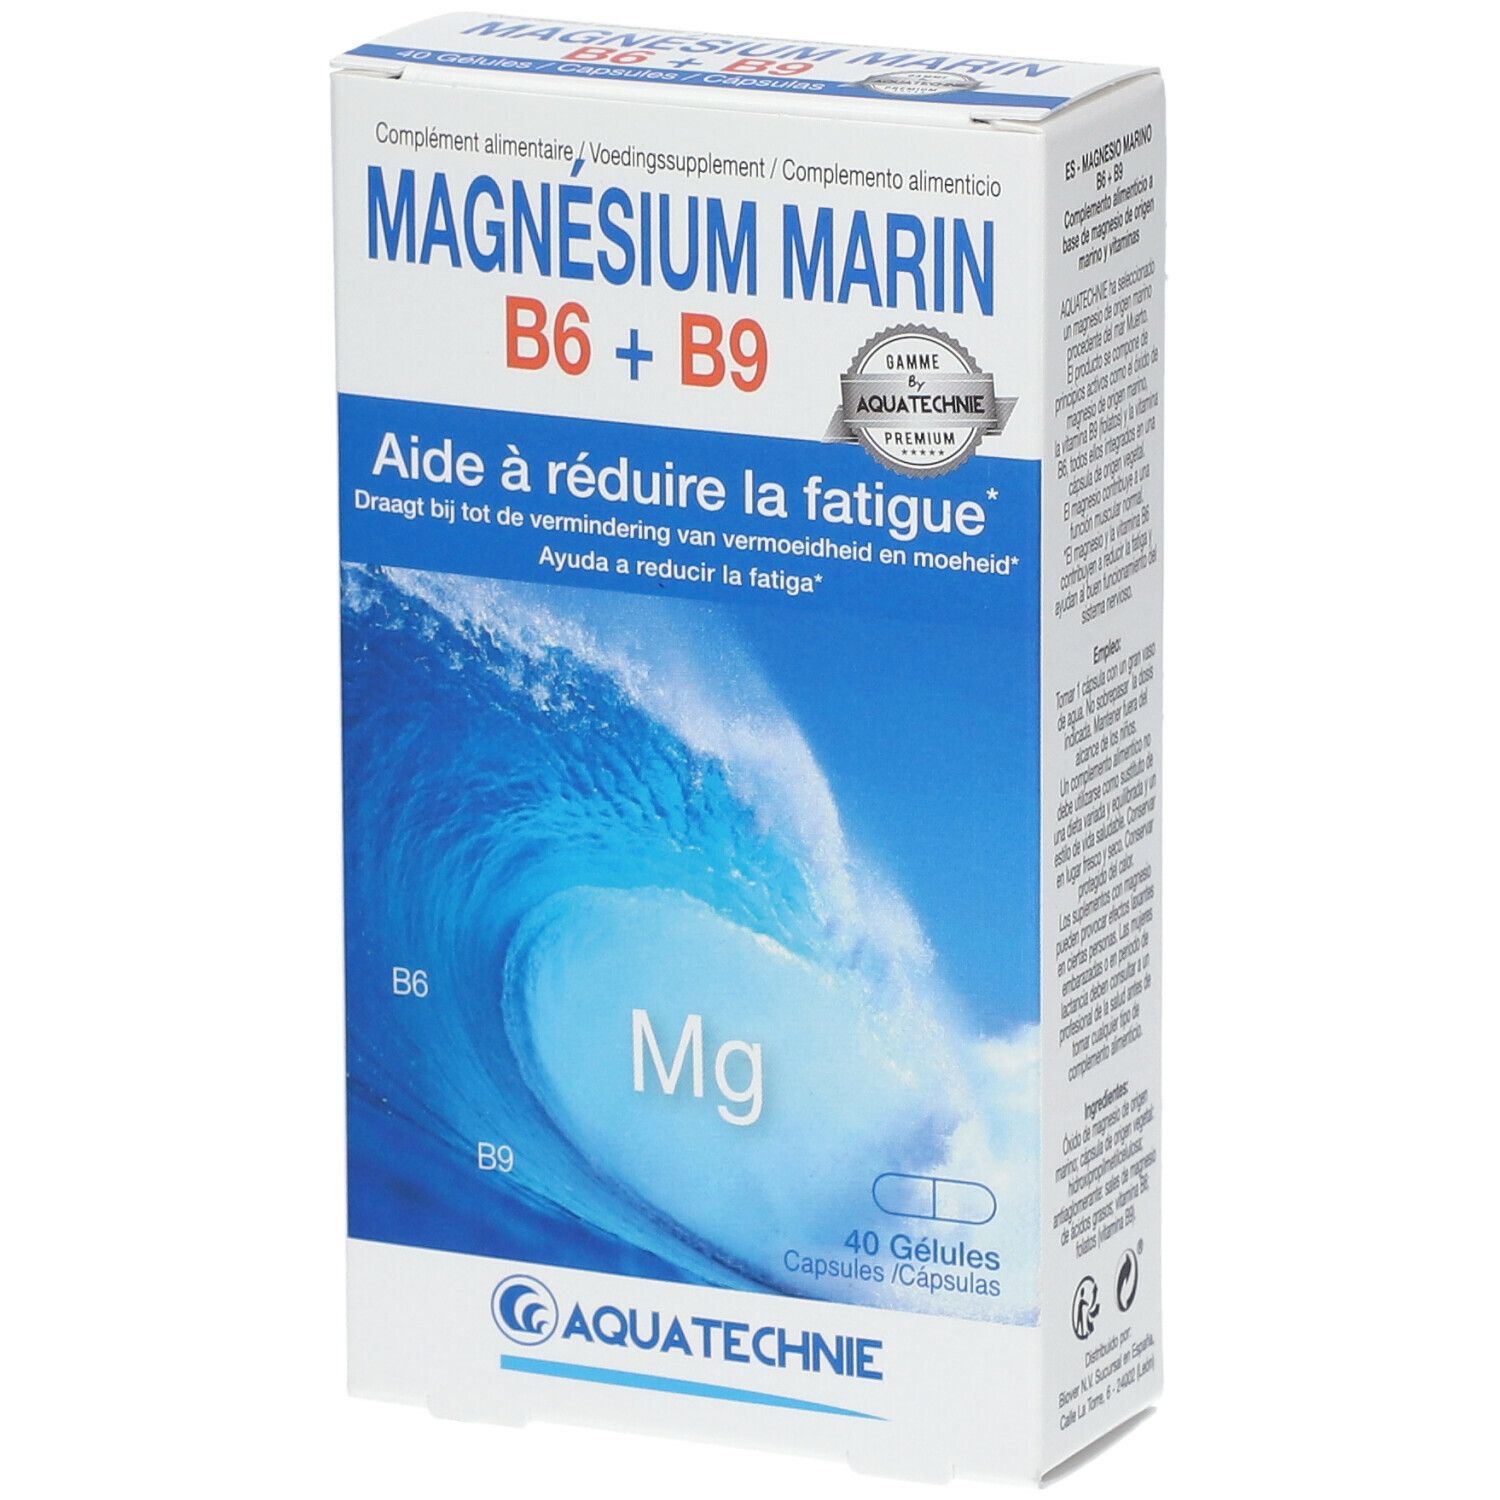 COSMEDIET Aquatechnie Marines Magnesium B6 + B9